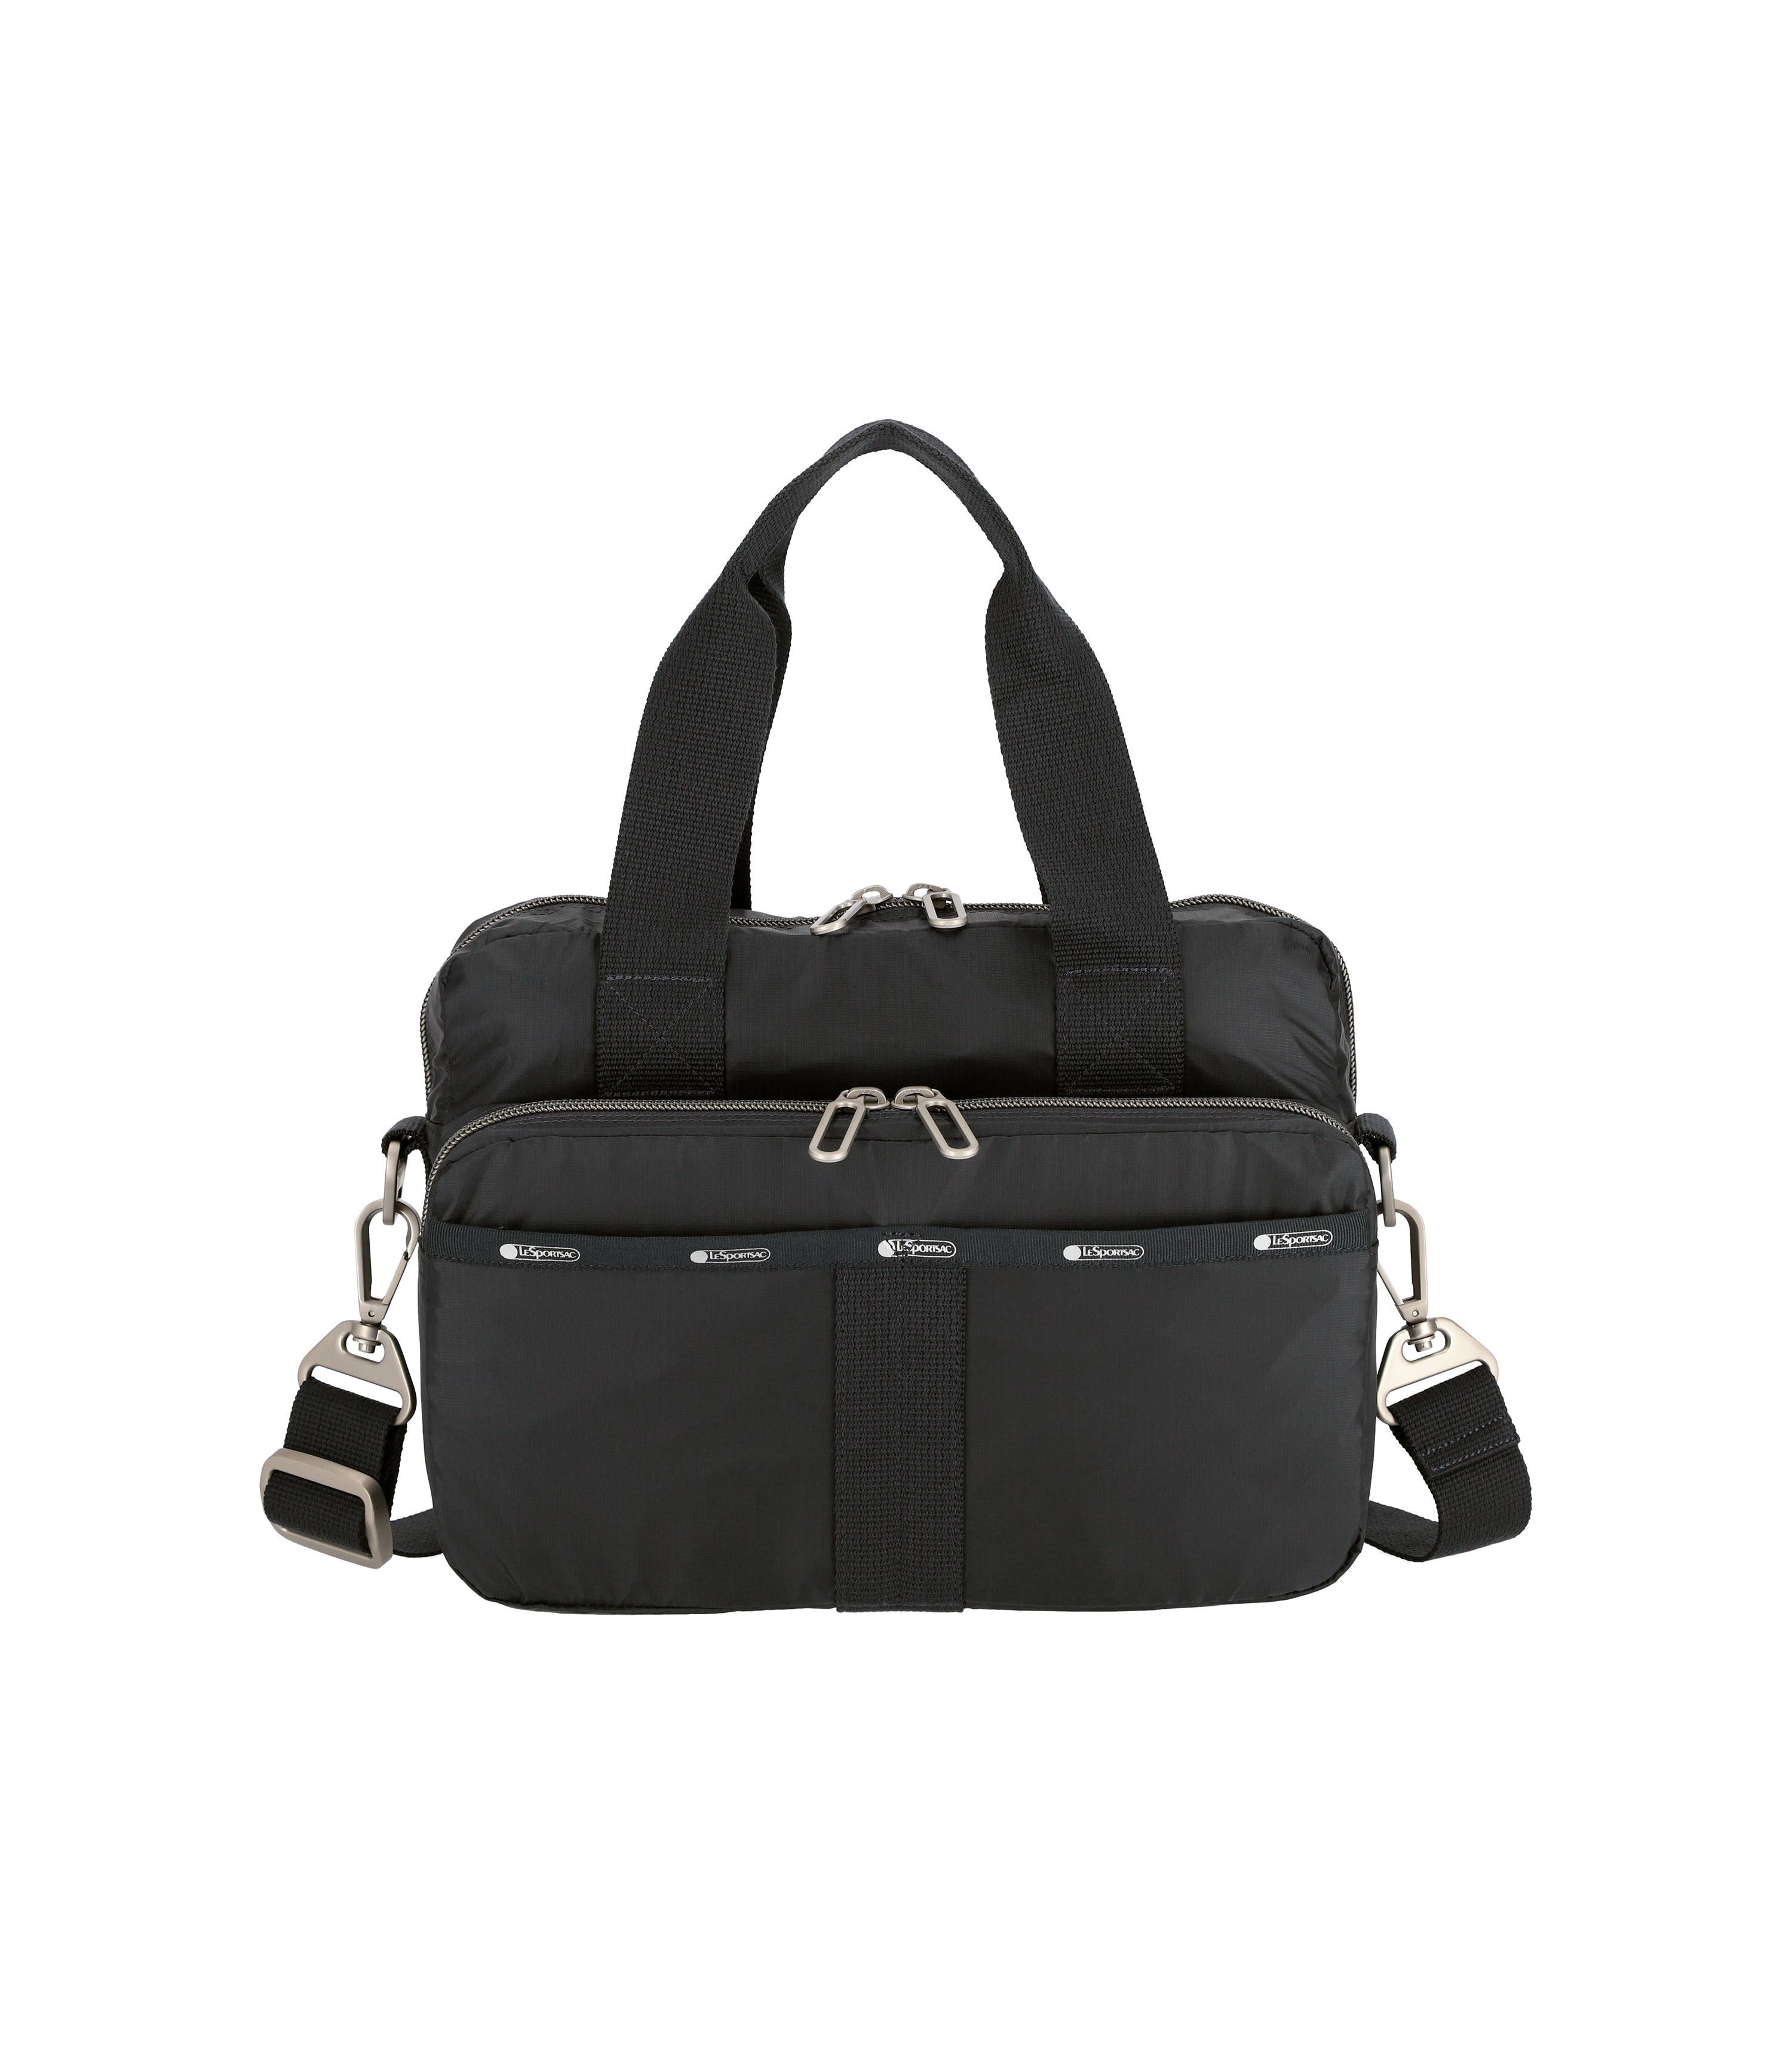 Stylish Convertible Shoulder Bag | Metro Convertible | LeSportsac